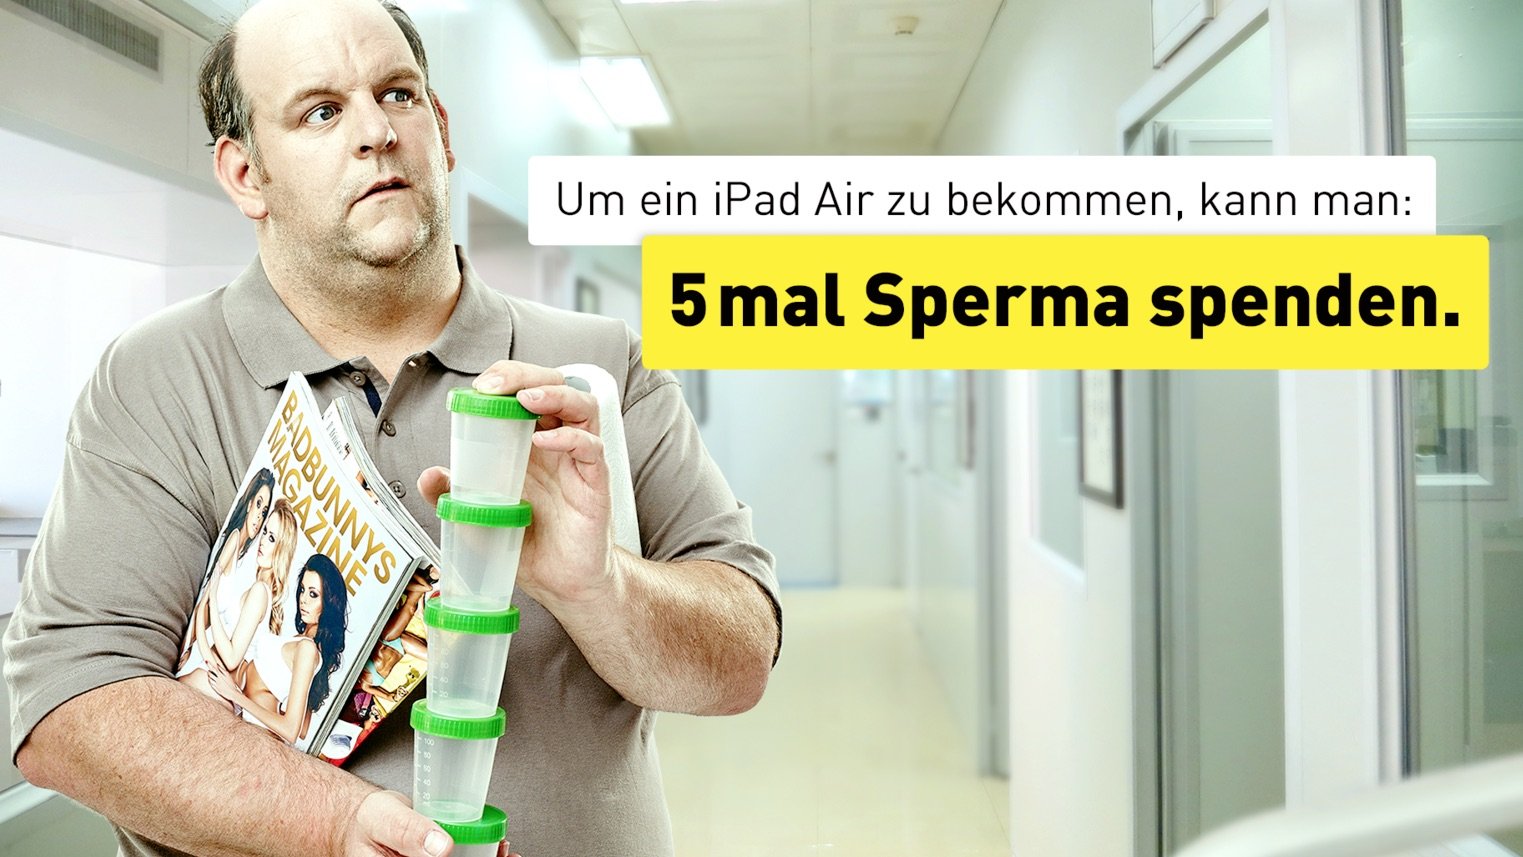 iPad Air für 5mal Sperma spenden - oder zu Yello Strom? 7